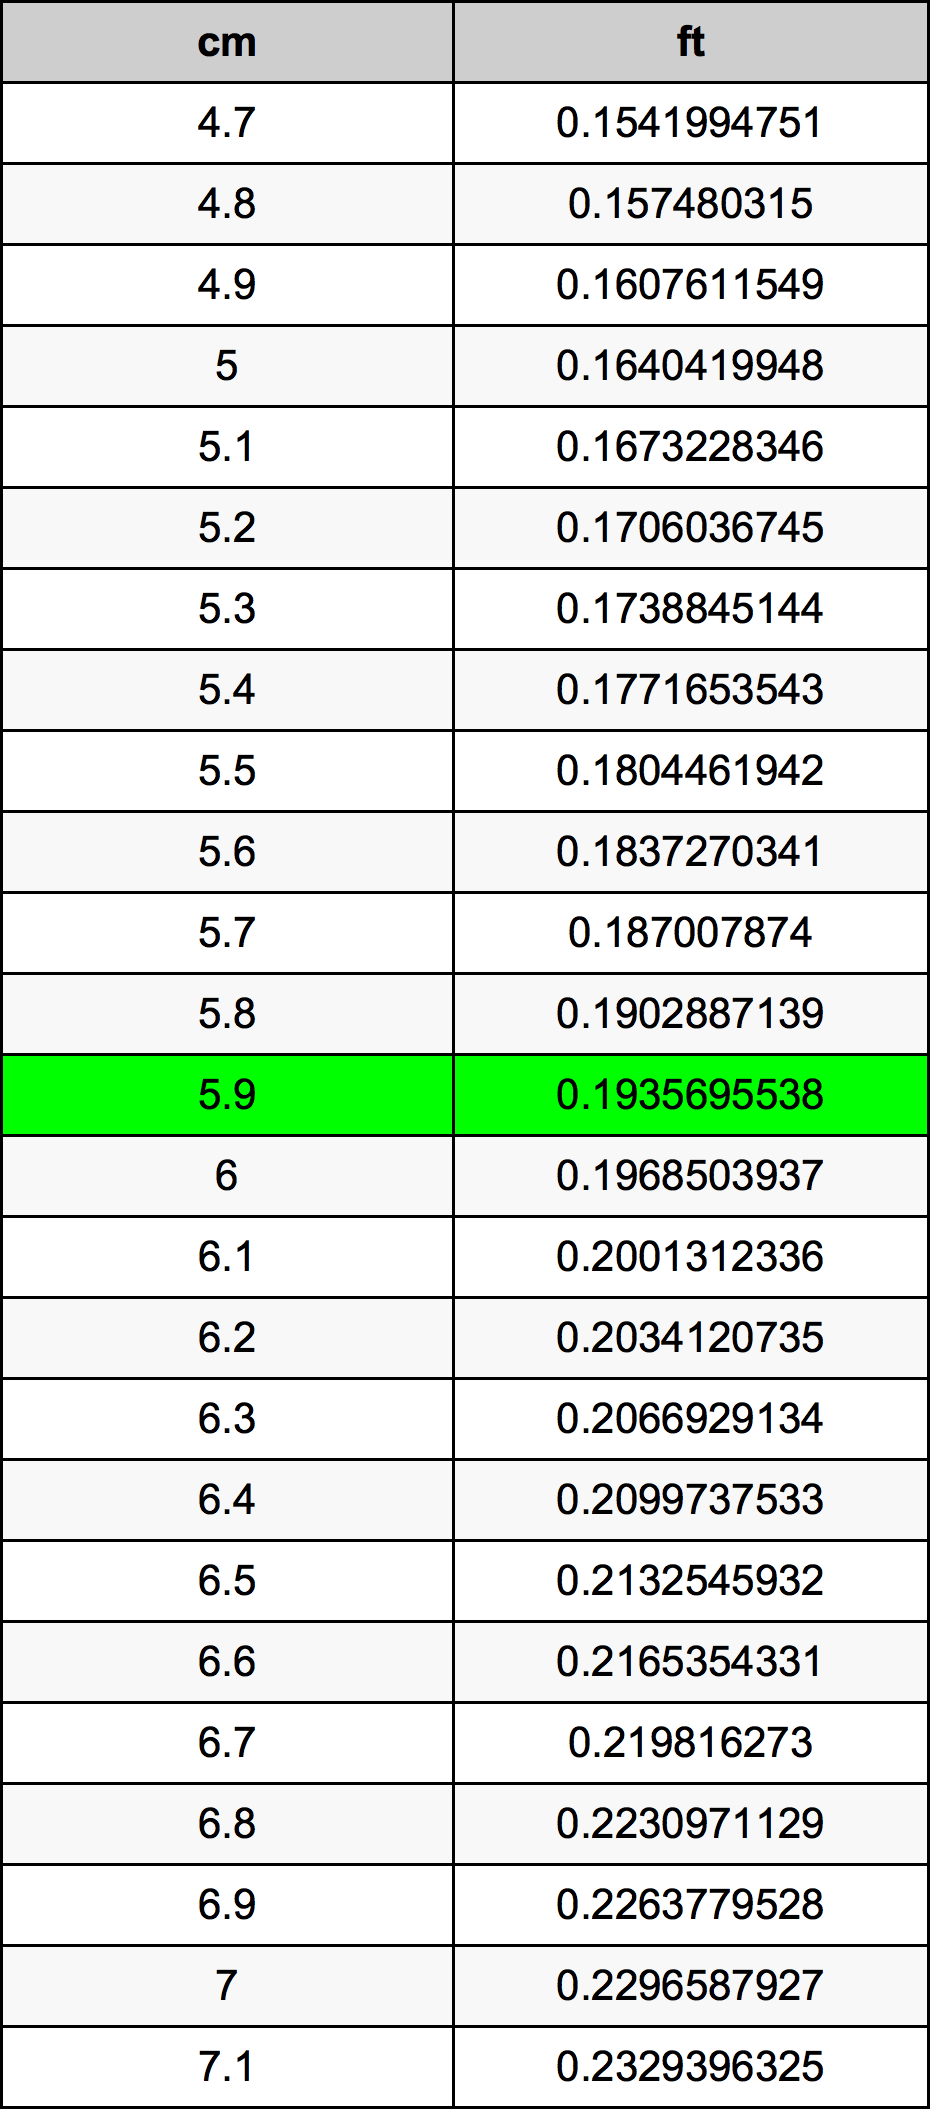 5.9 Centiméter átszámítási táblázat